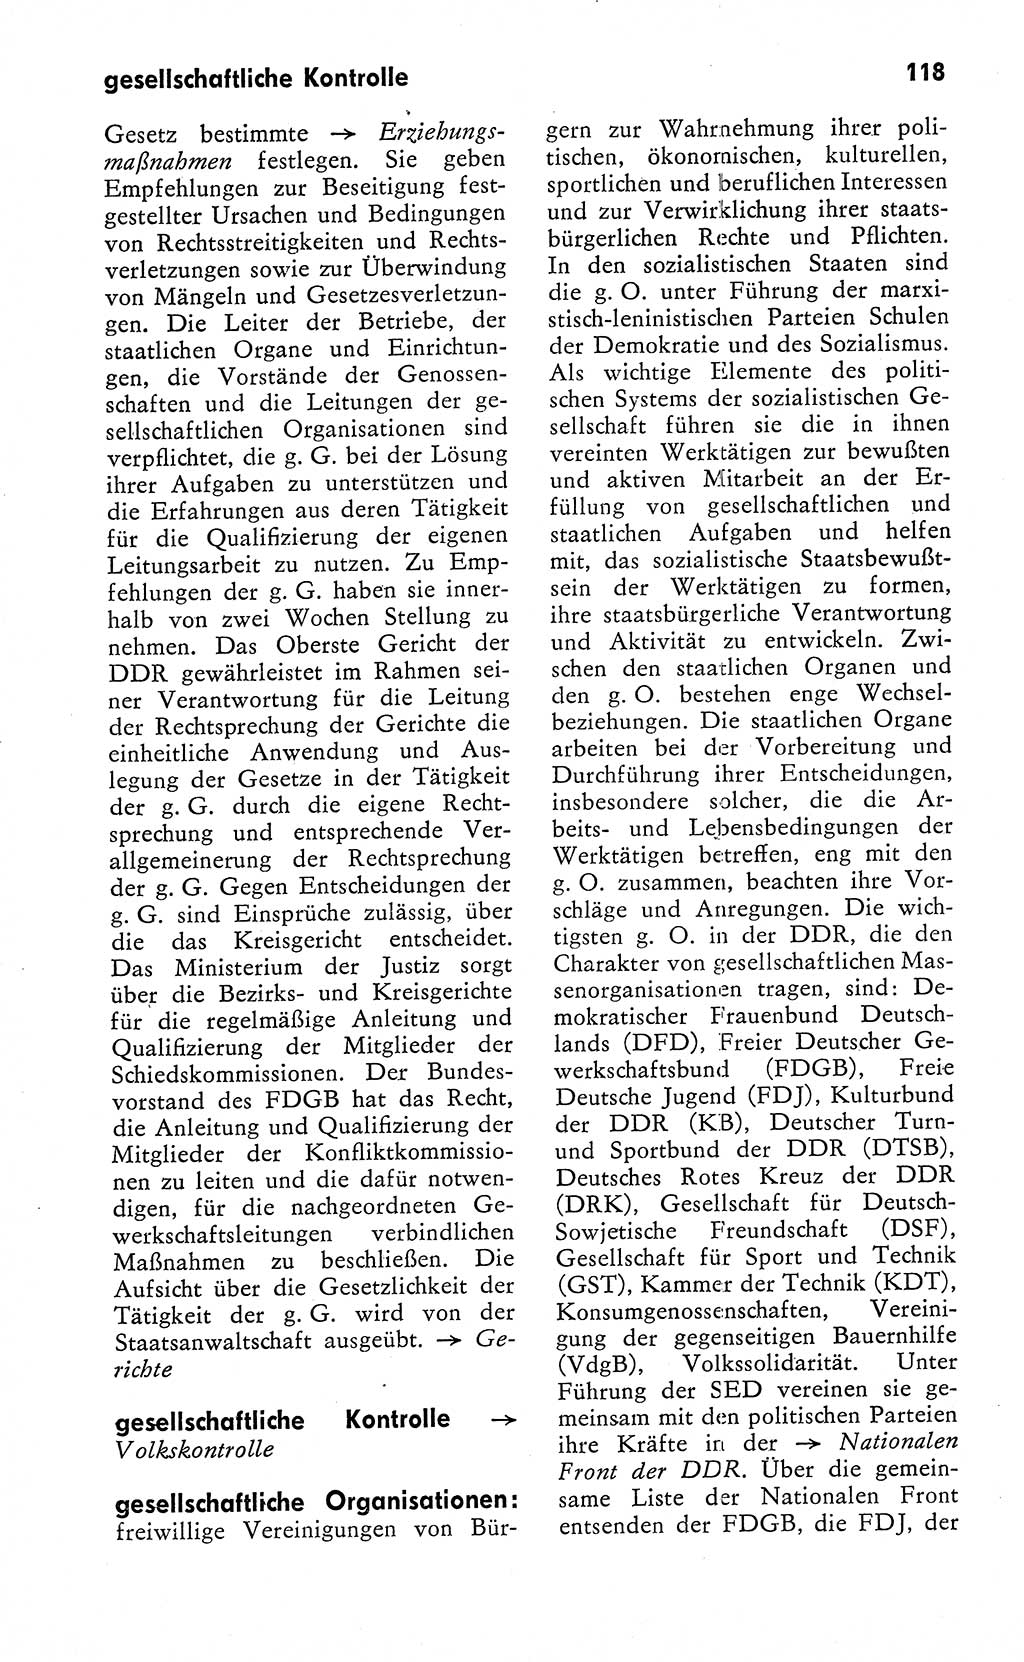 Wörterbuch zum sozialistischen Staat [Deutsche Demokratische Republik (DDR)] 1974, Seite 118 (Wb. soz. St. DDR 1974, S. 118)